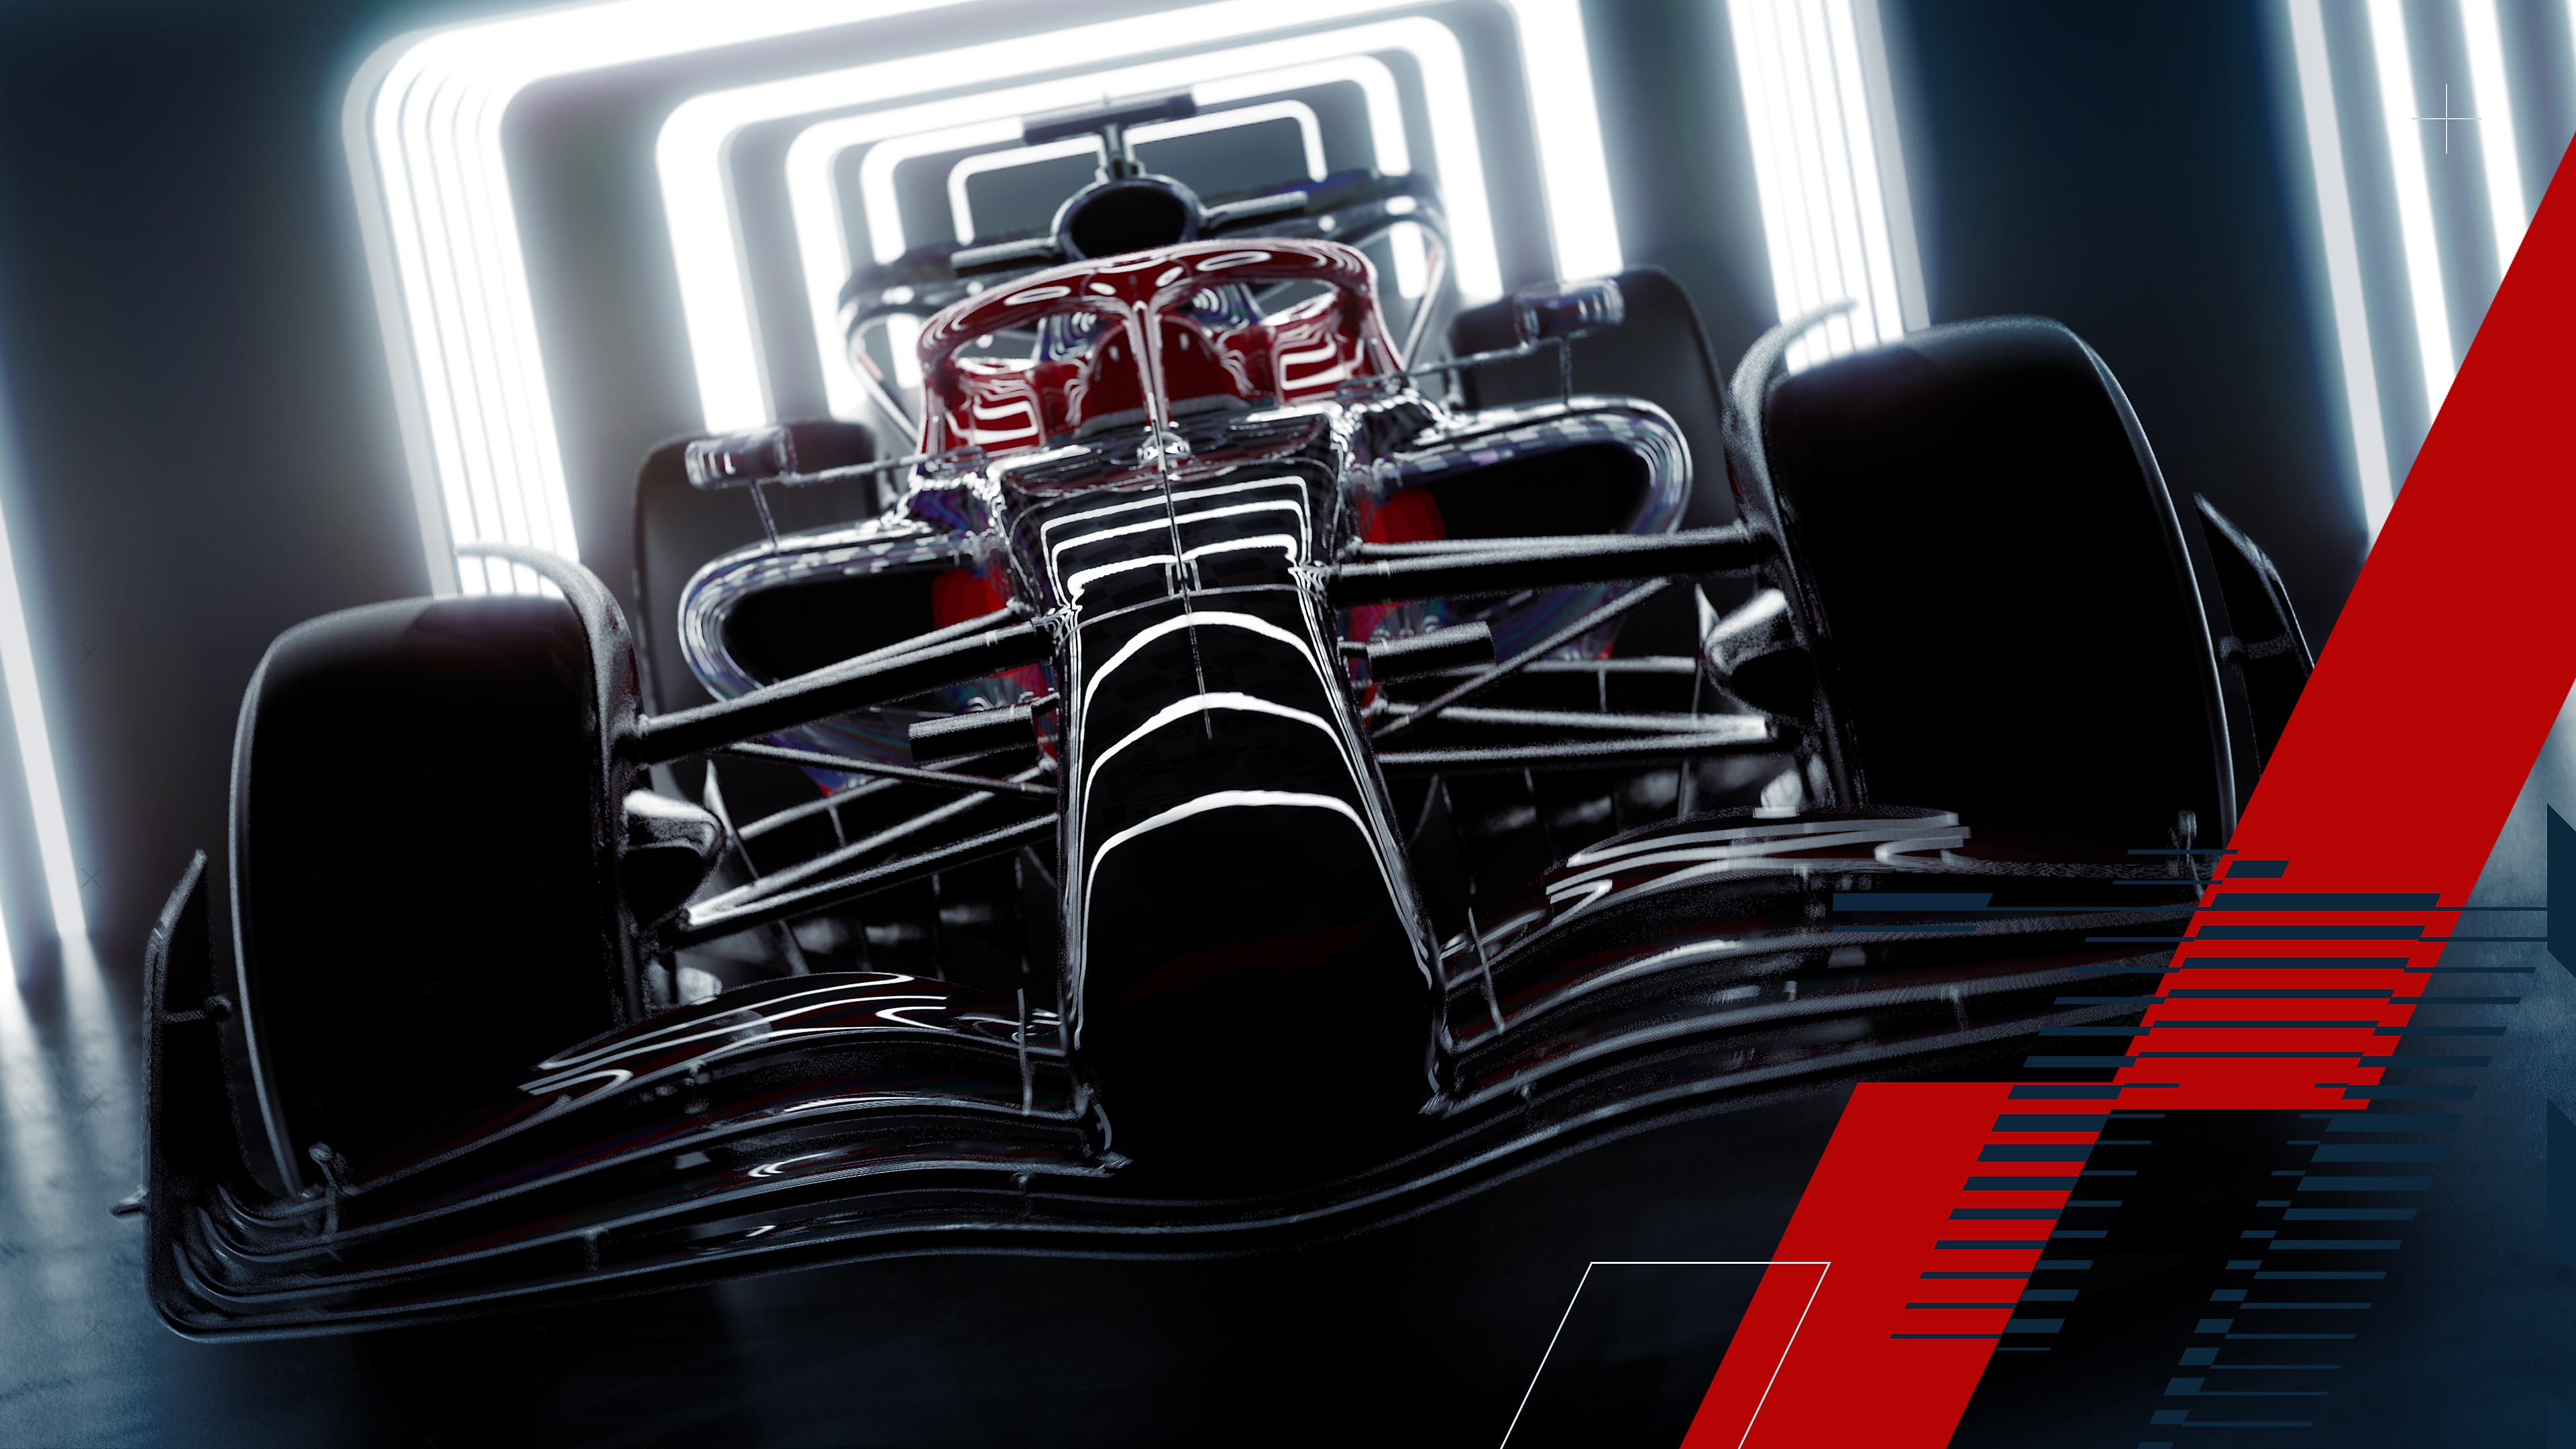 F1 22 screenshot showing an F1 car